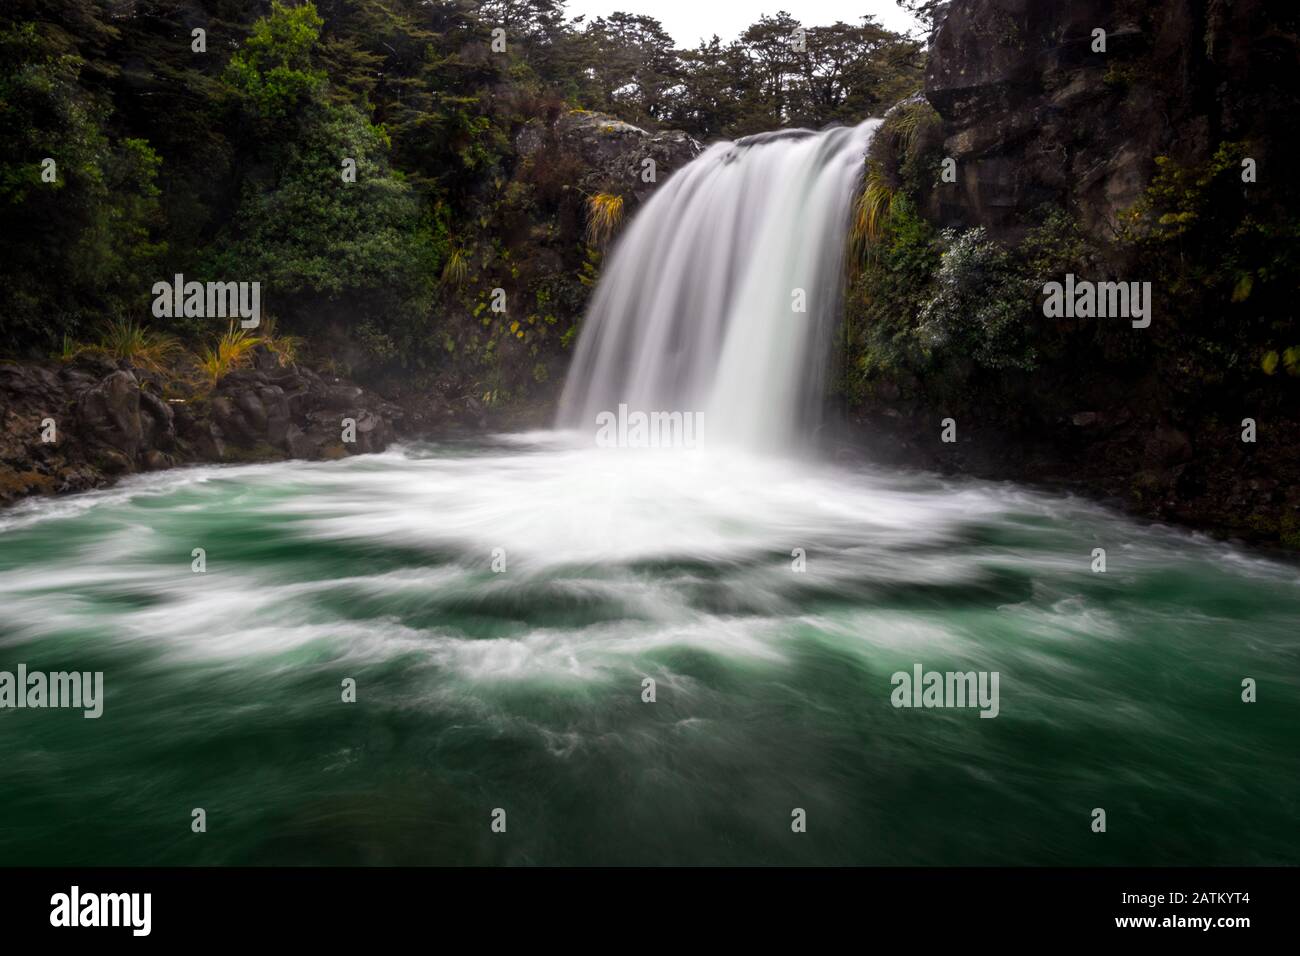 Vista sobre la hermosa y poderosa cascada donde el Señor de los Anillos se produjo con Golum. La flora nativa rodea la escena. Parque Nacional Tongariro, Nueva Z Foto de stock